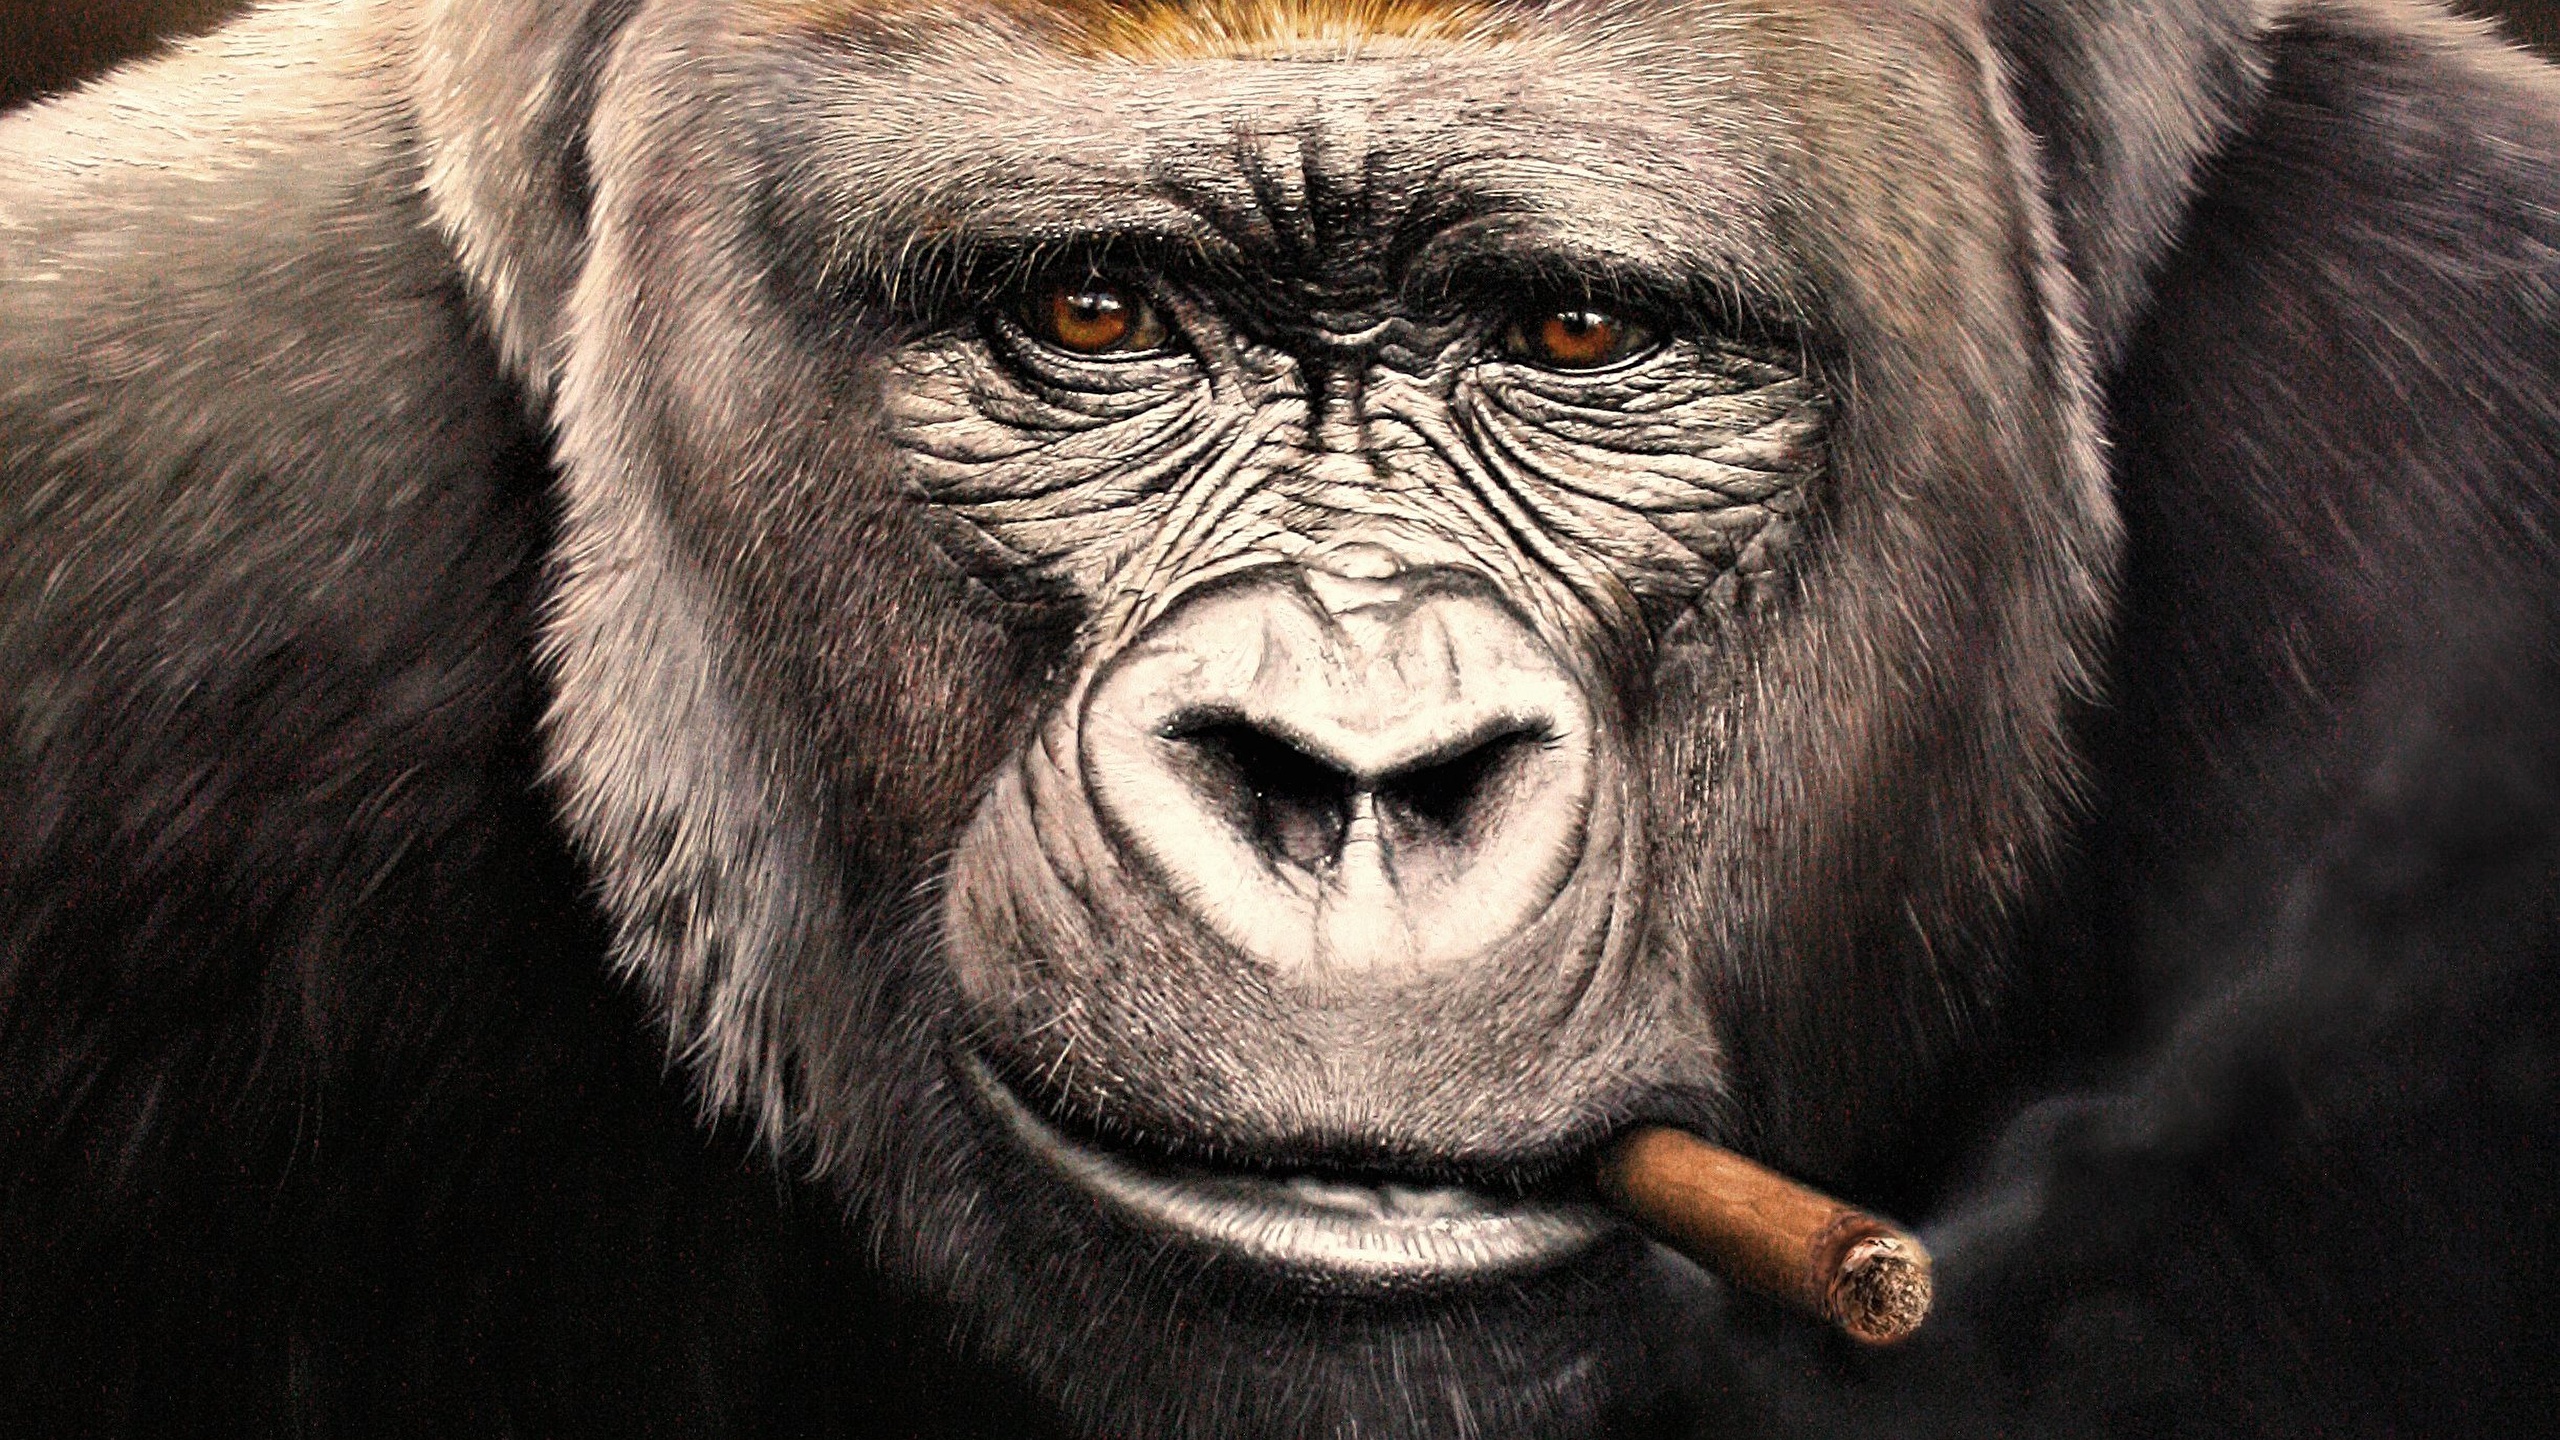 壁紙 2560x1440 サル Gorilla 動物のスナウト 凝視 葉巻 顔 動物 ダウンロード 写真